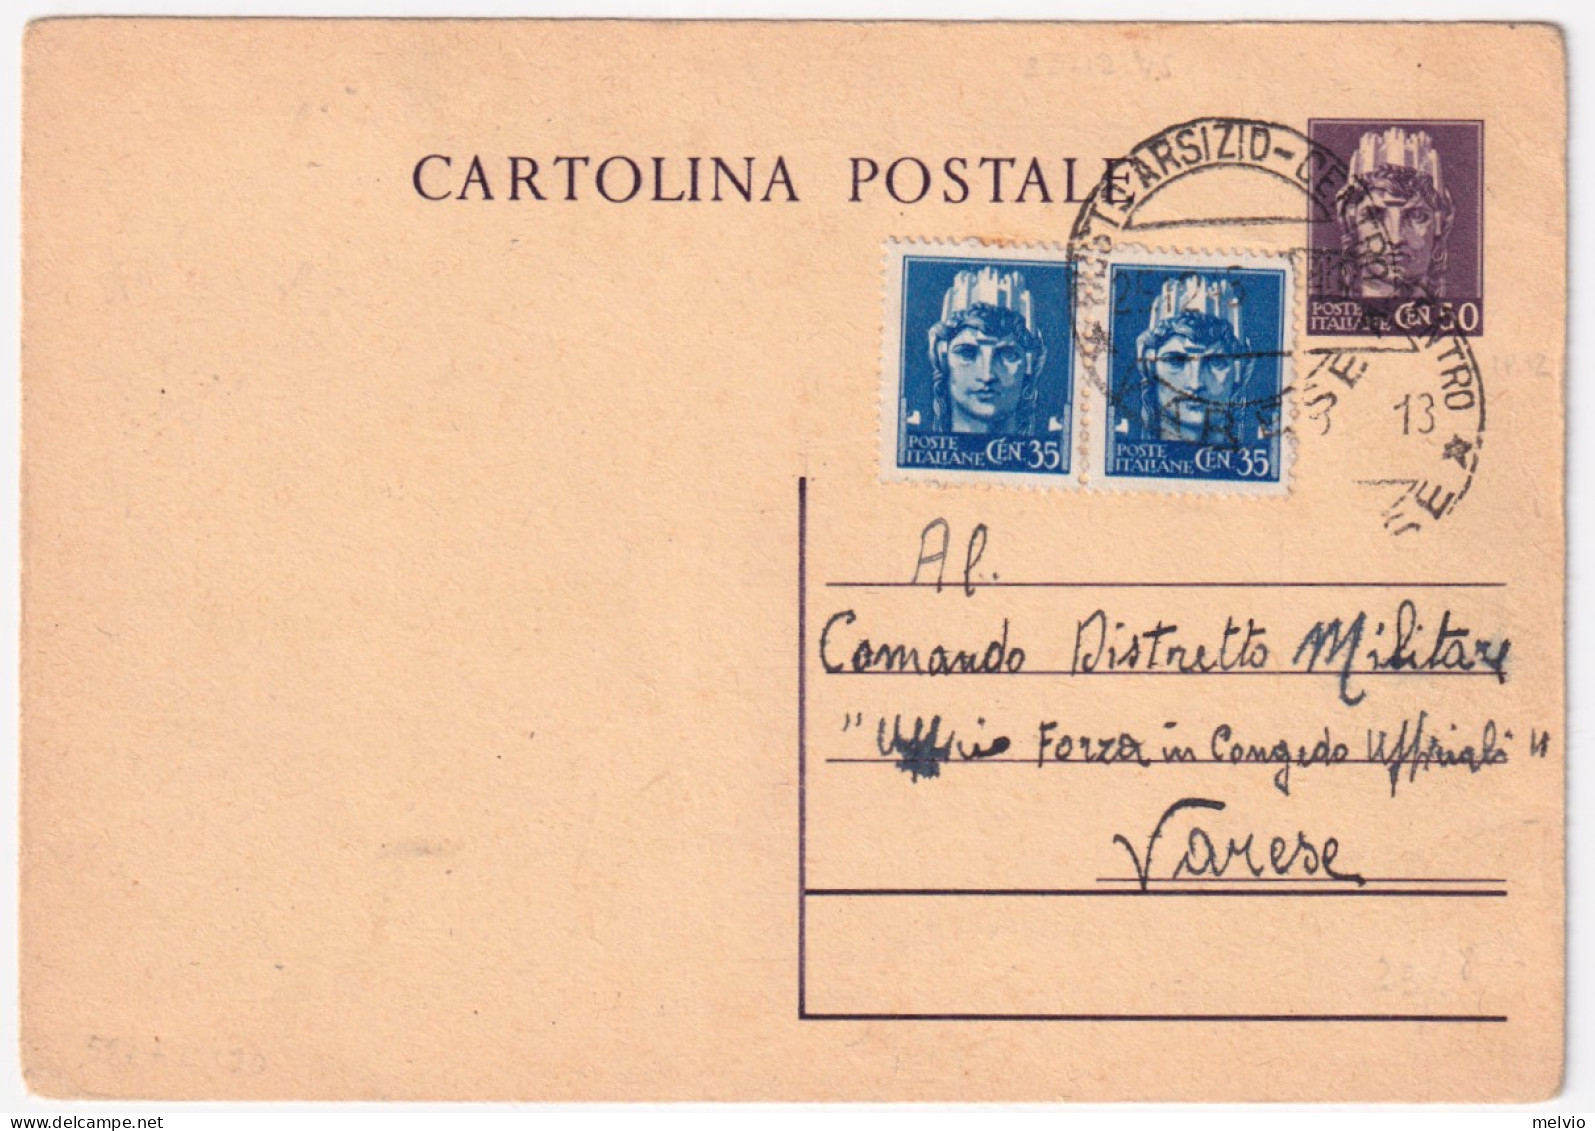 1945-Cartolina Postale C.50 (C120) Con Fr.lli Aggiunti Imperiale Senza Filigrana - Marcophilie